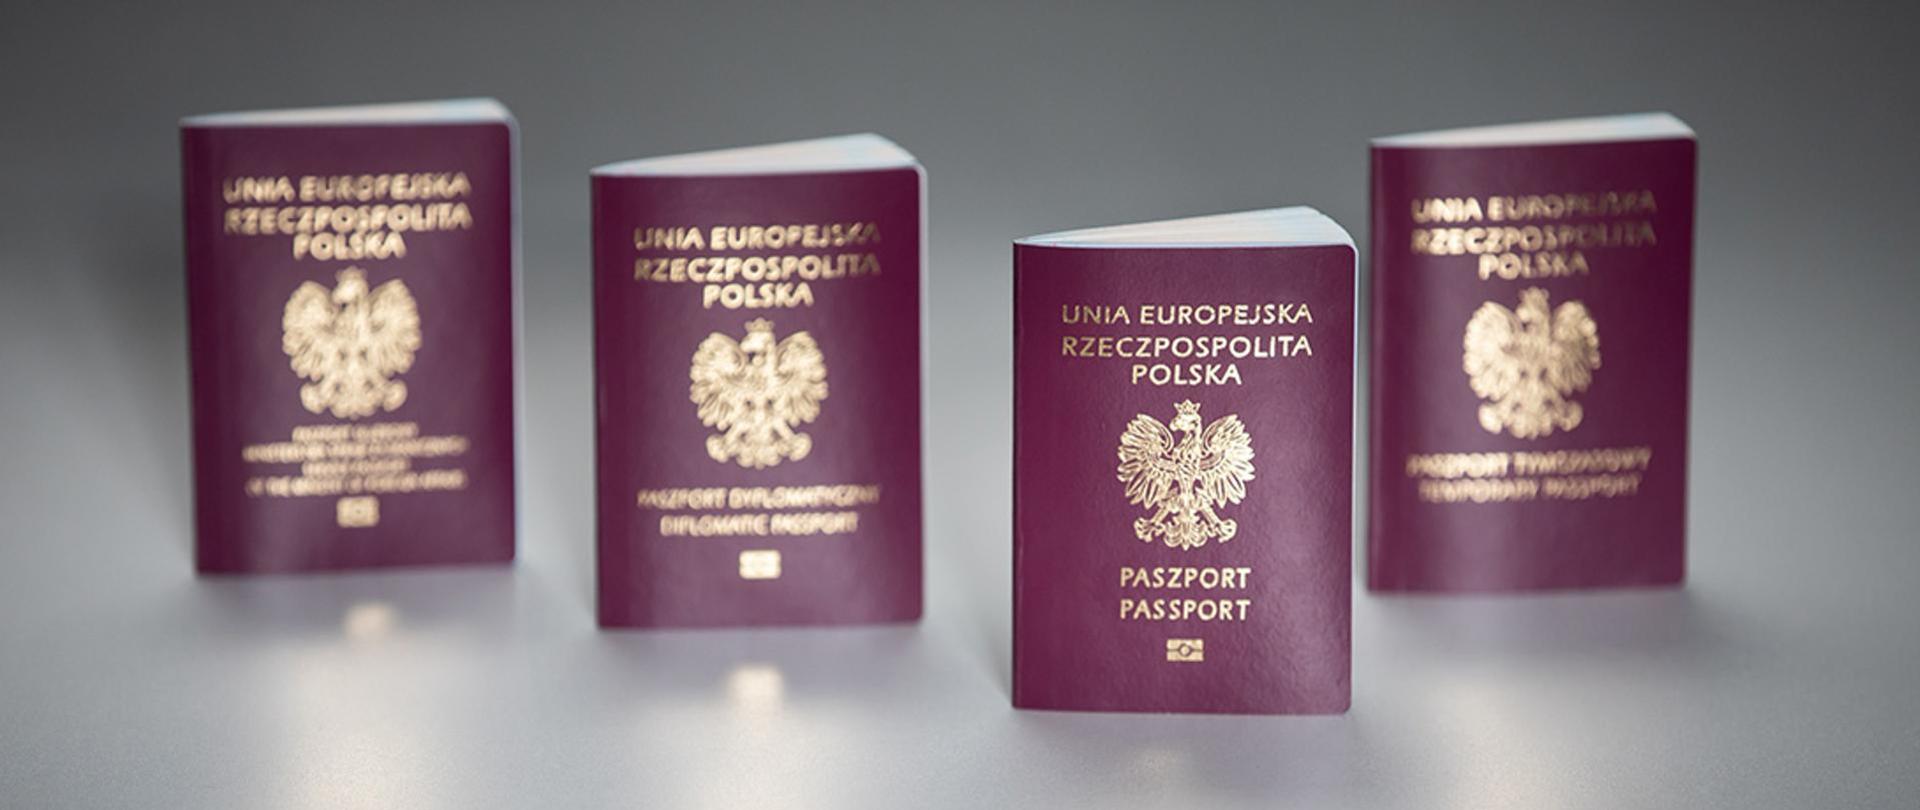 nowy system wyrabiania paszportów